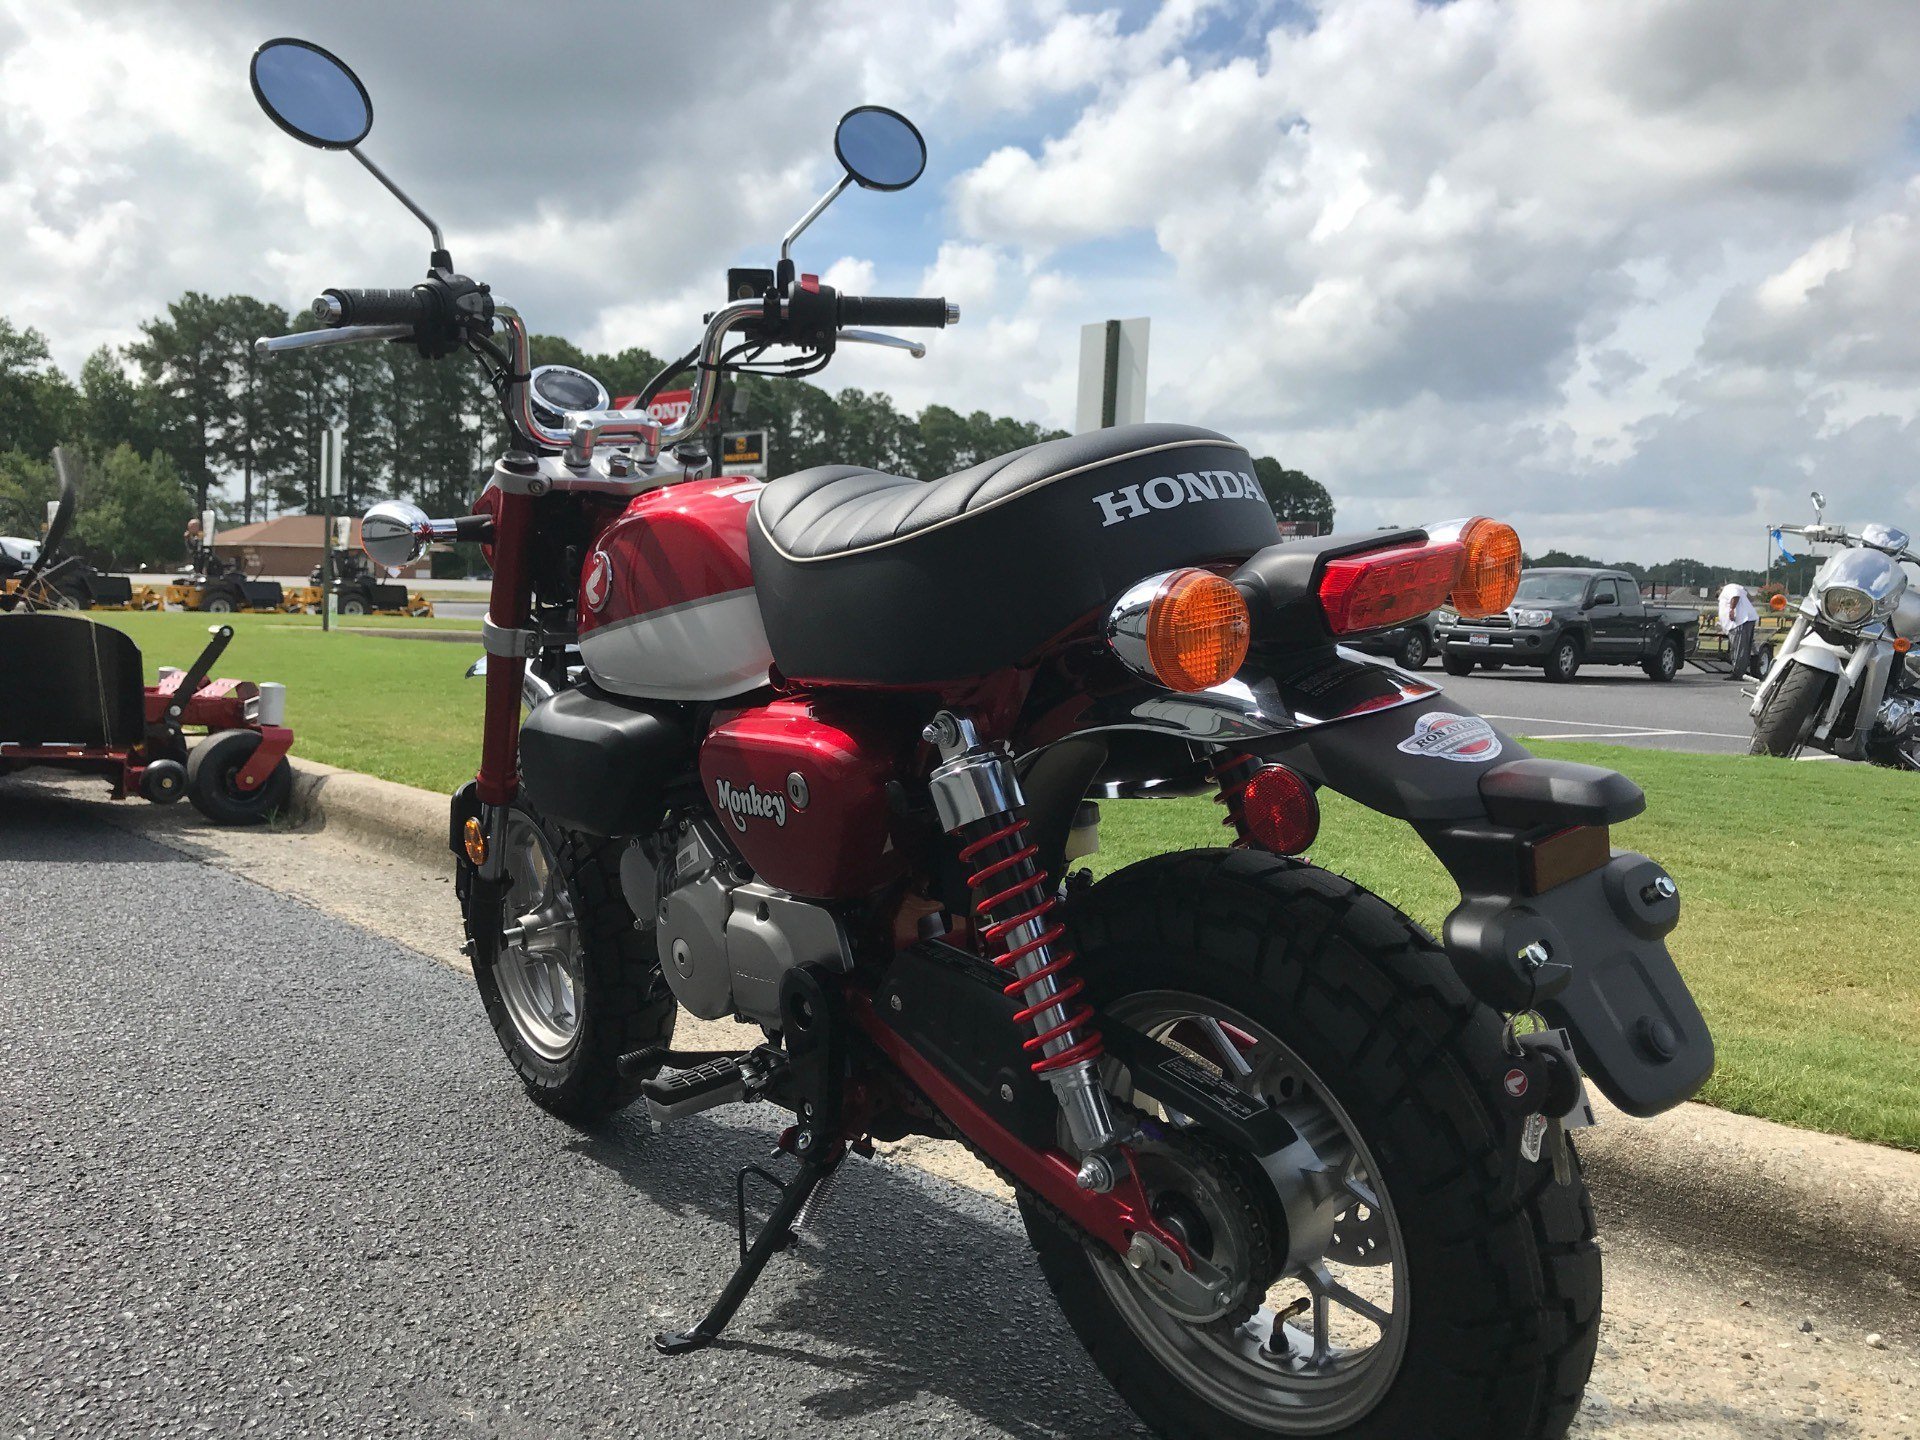 2021 Honda Monkey in Greenville, North Carolina - Photo 6